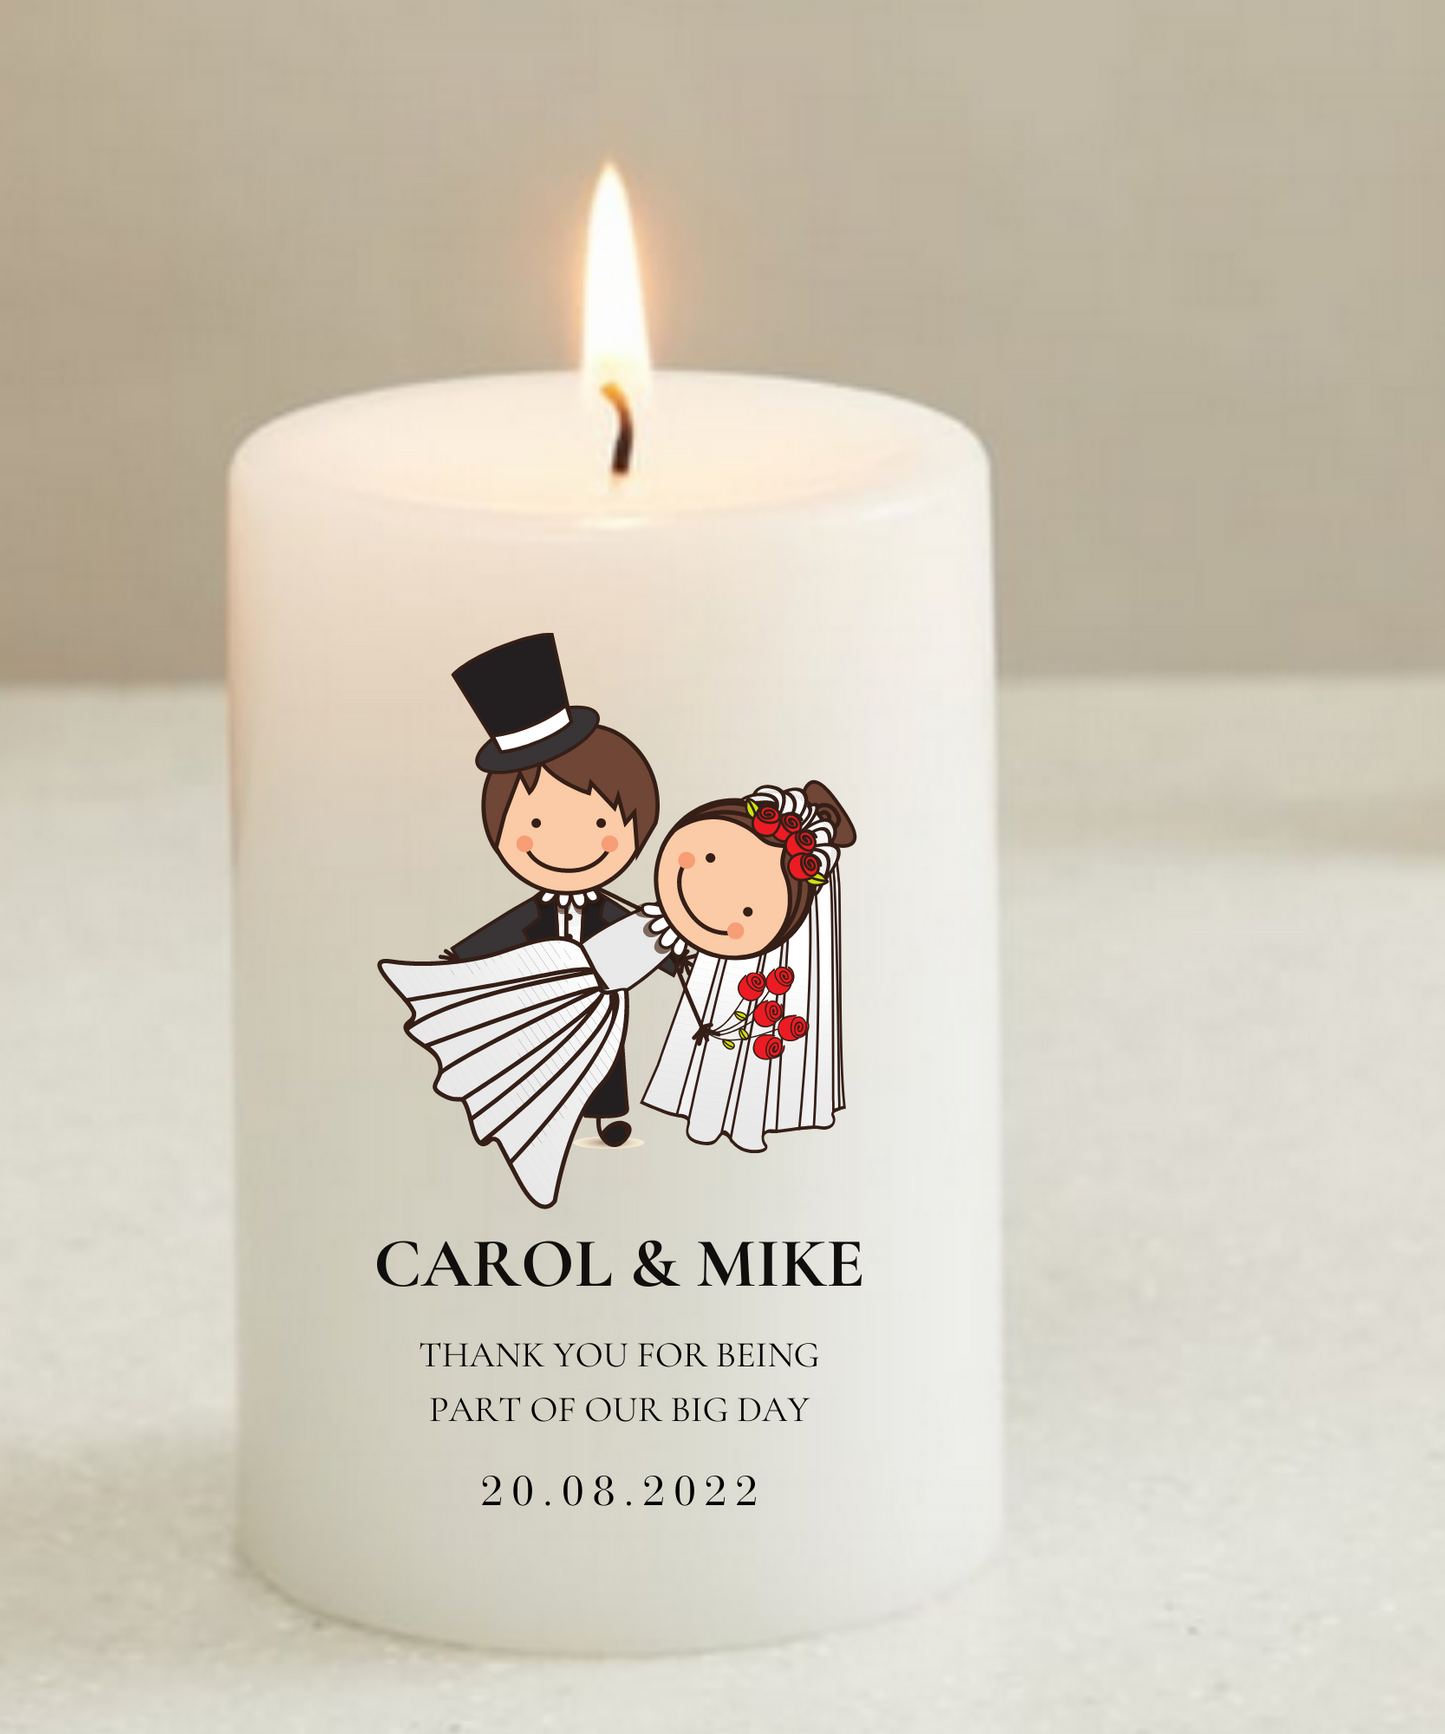 Customised Wedding Return Gift Candles